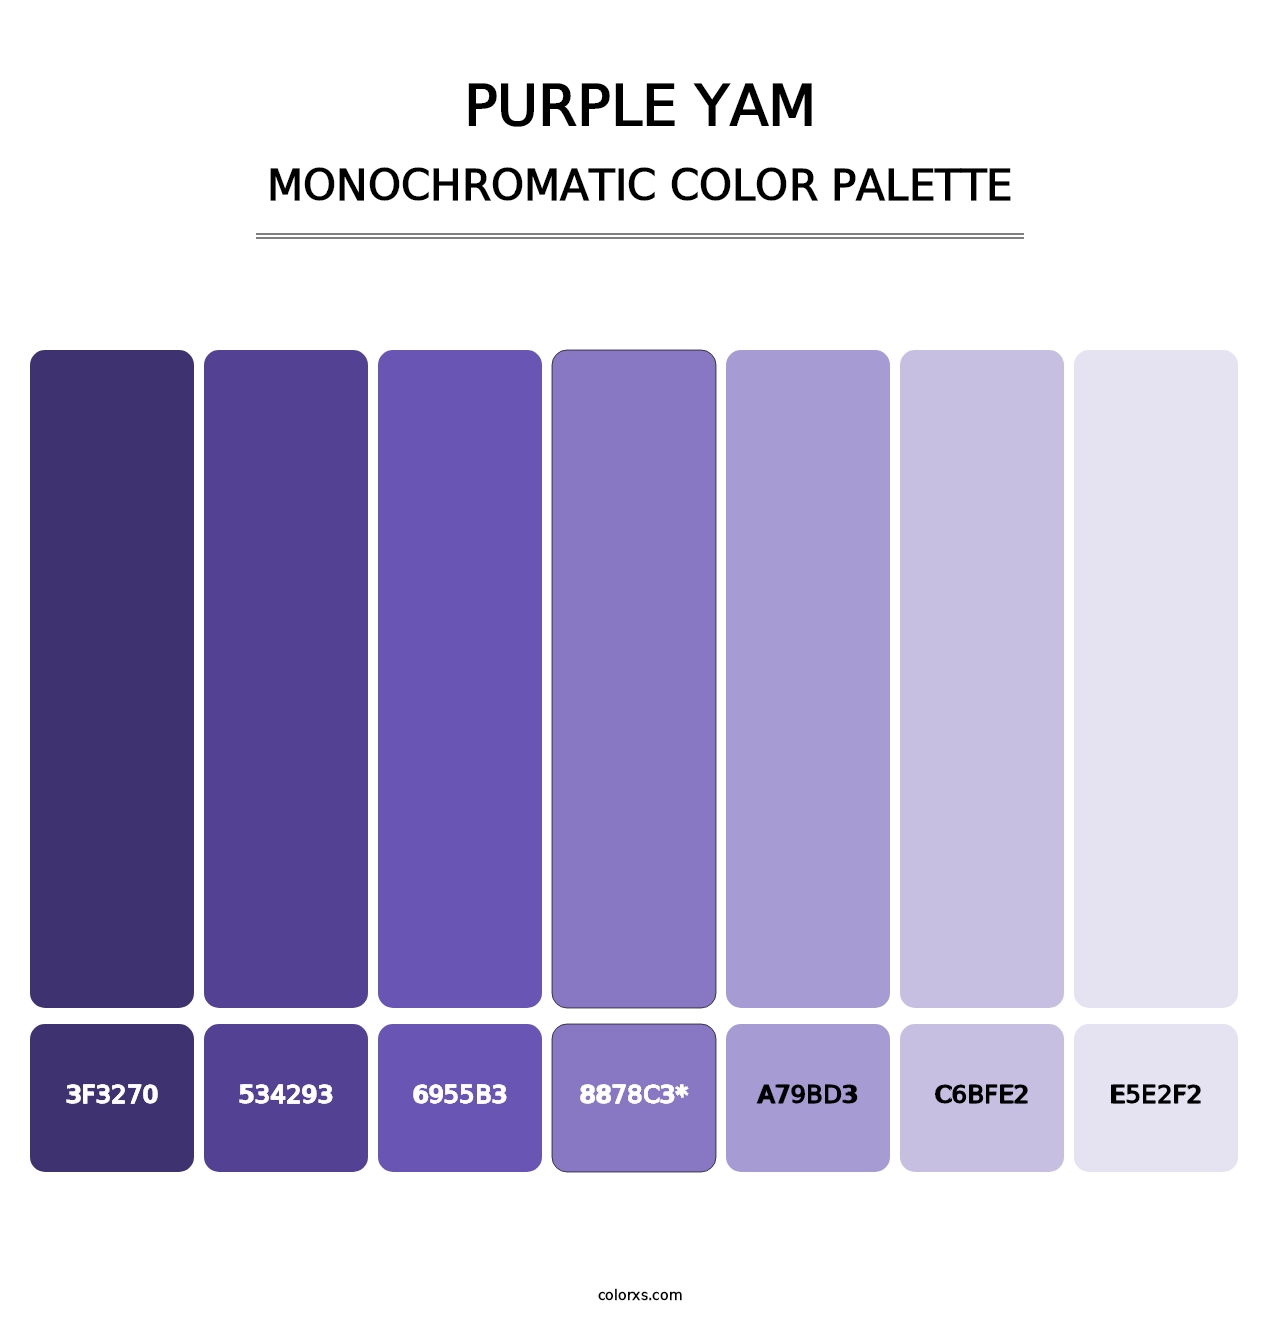 Purple Yam - Monochromatic Color Palette